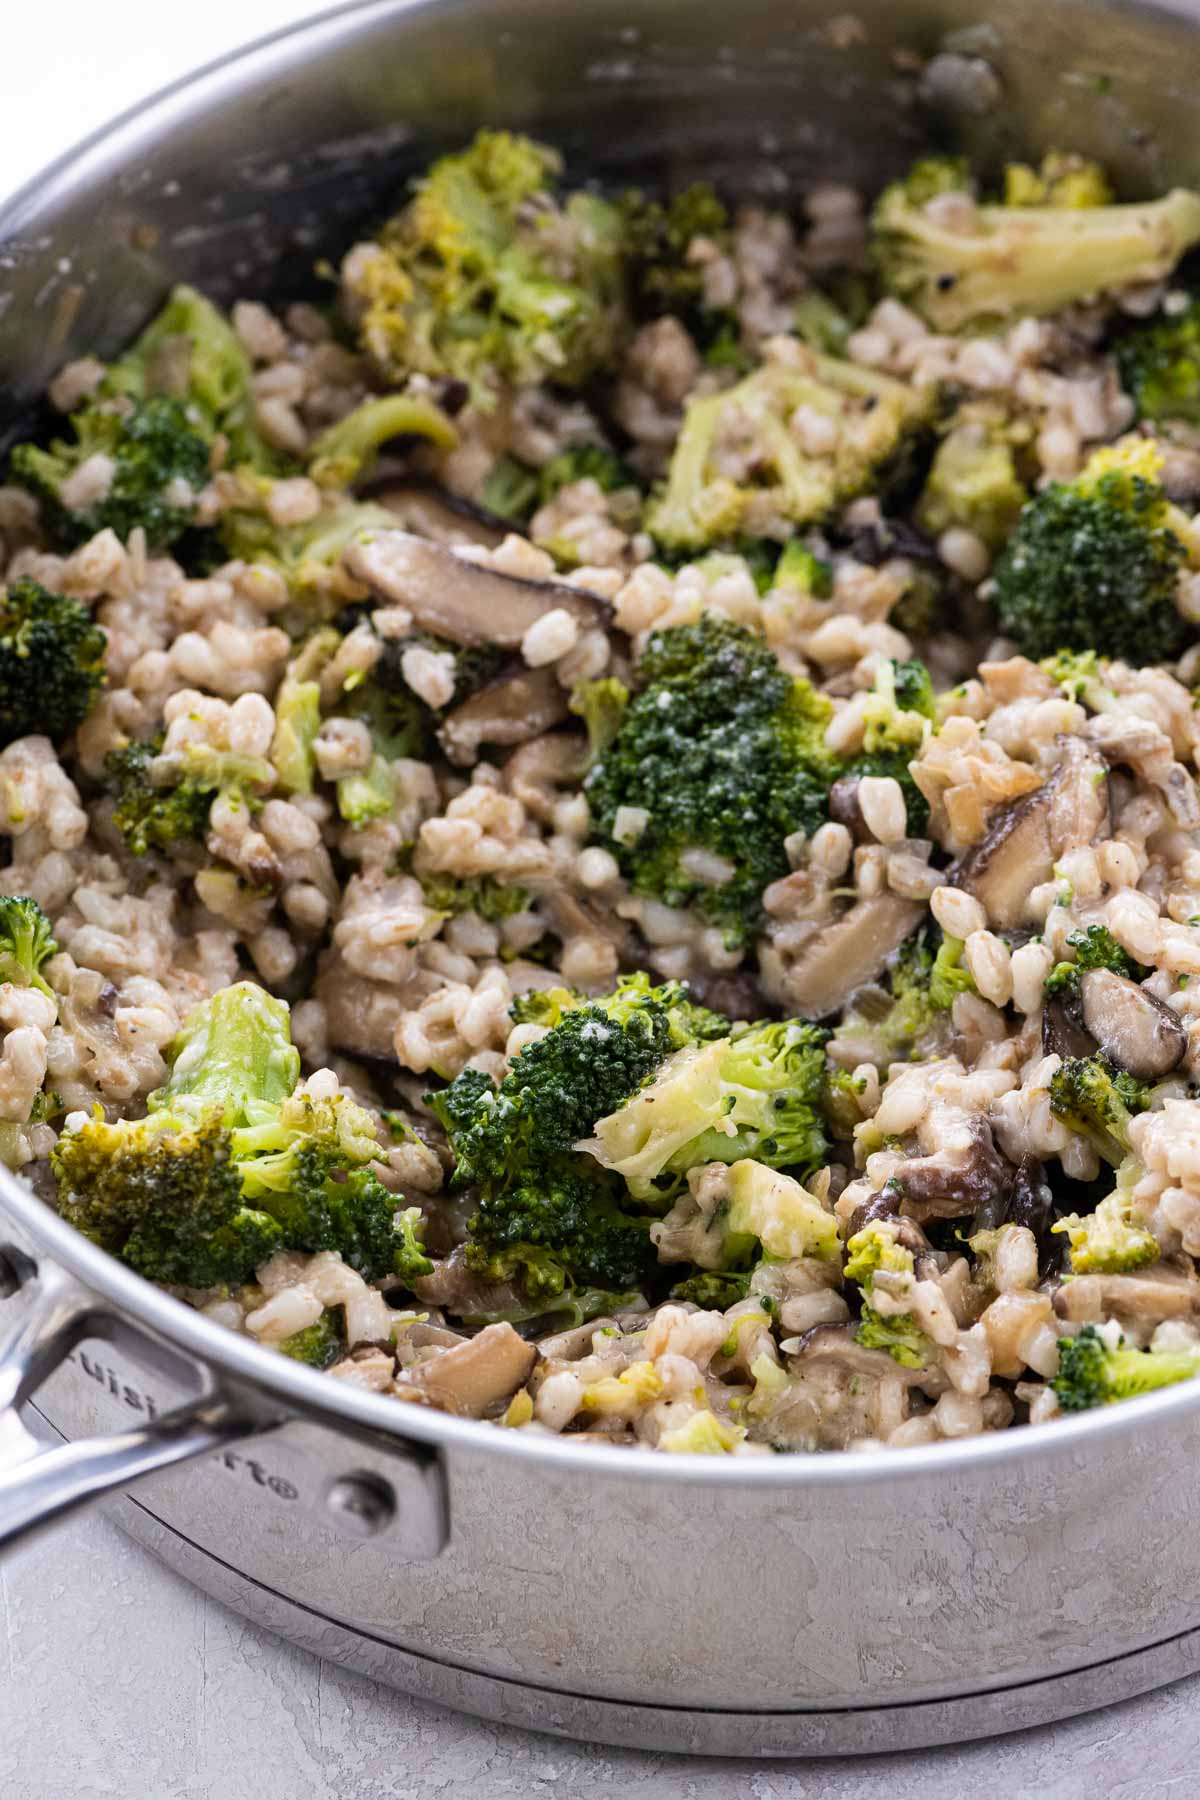 vegan farro recipe with broccoli and shiitakes in a pan